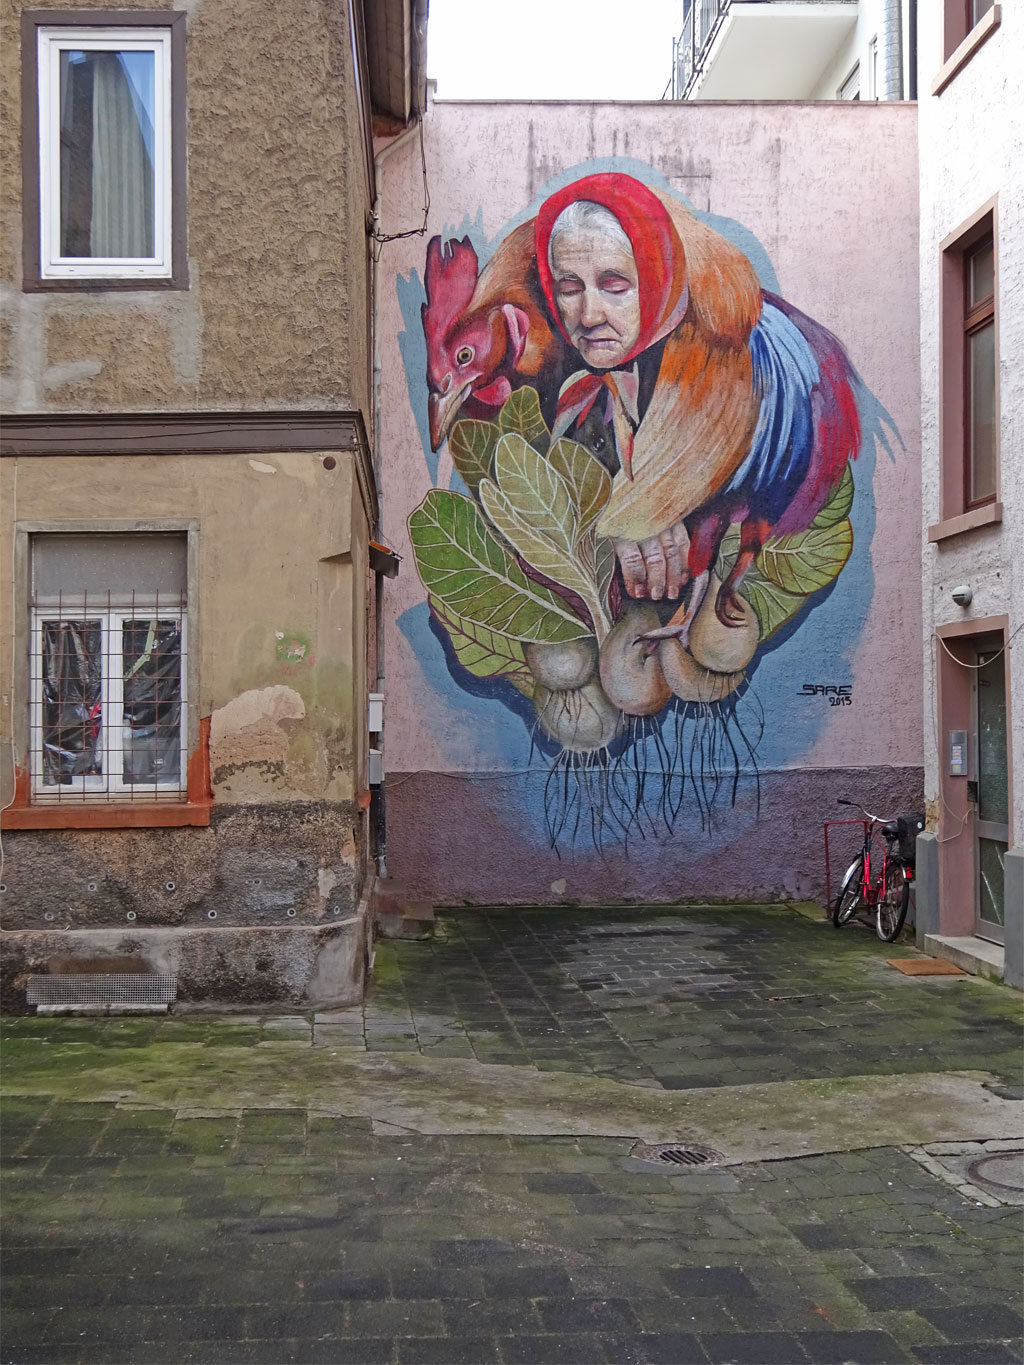 Mural von Sare in Offenbach